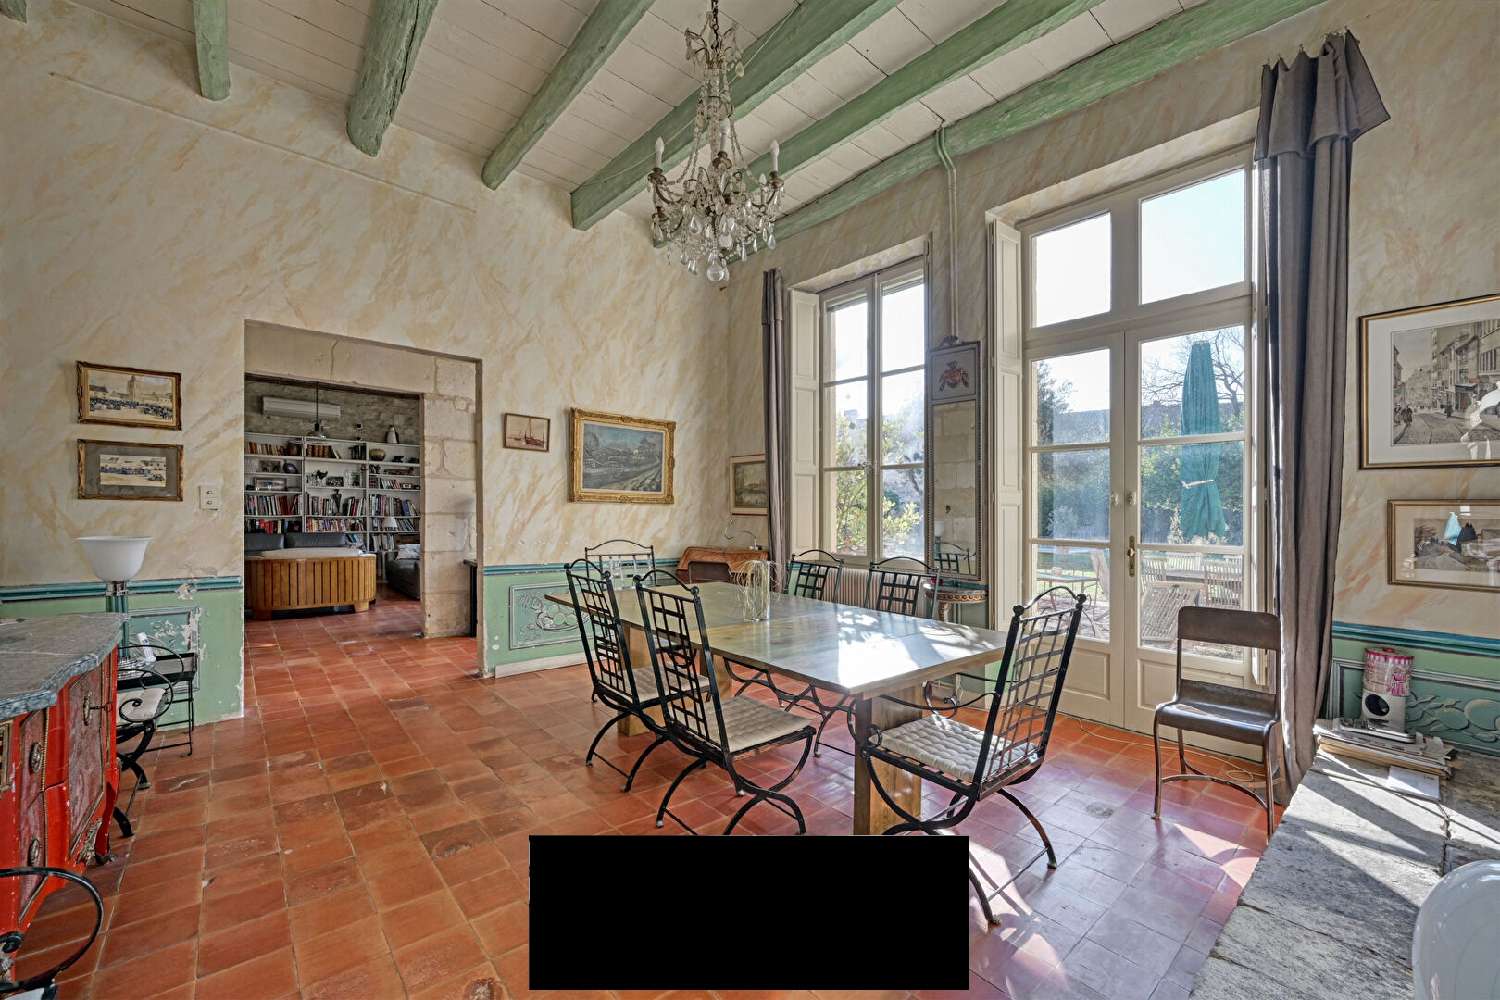  à vendre villa Manduel Gard 4